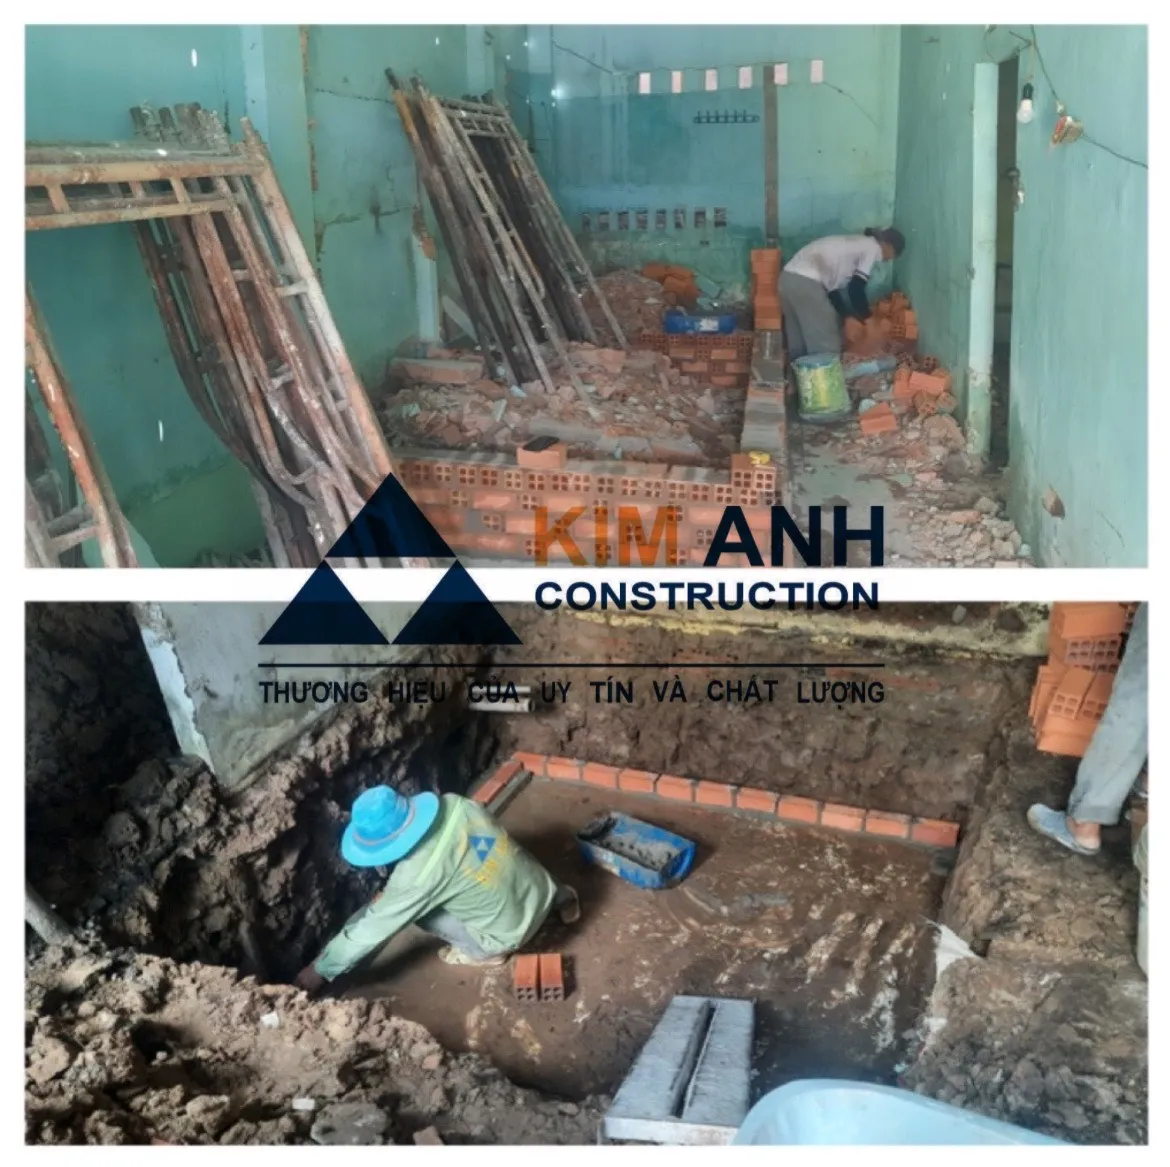 Xây Dựng Kim Anh sửa chữa nhà Quận Bình Tân